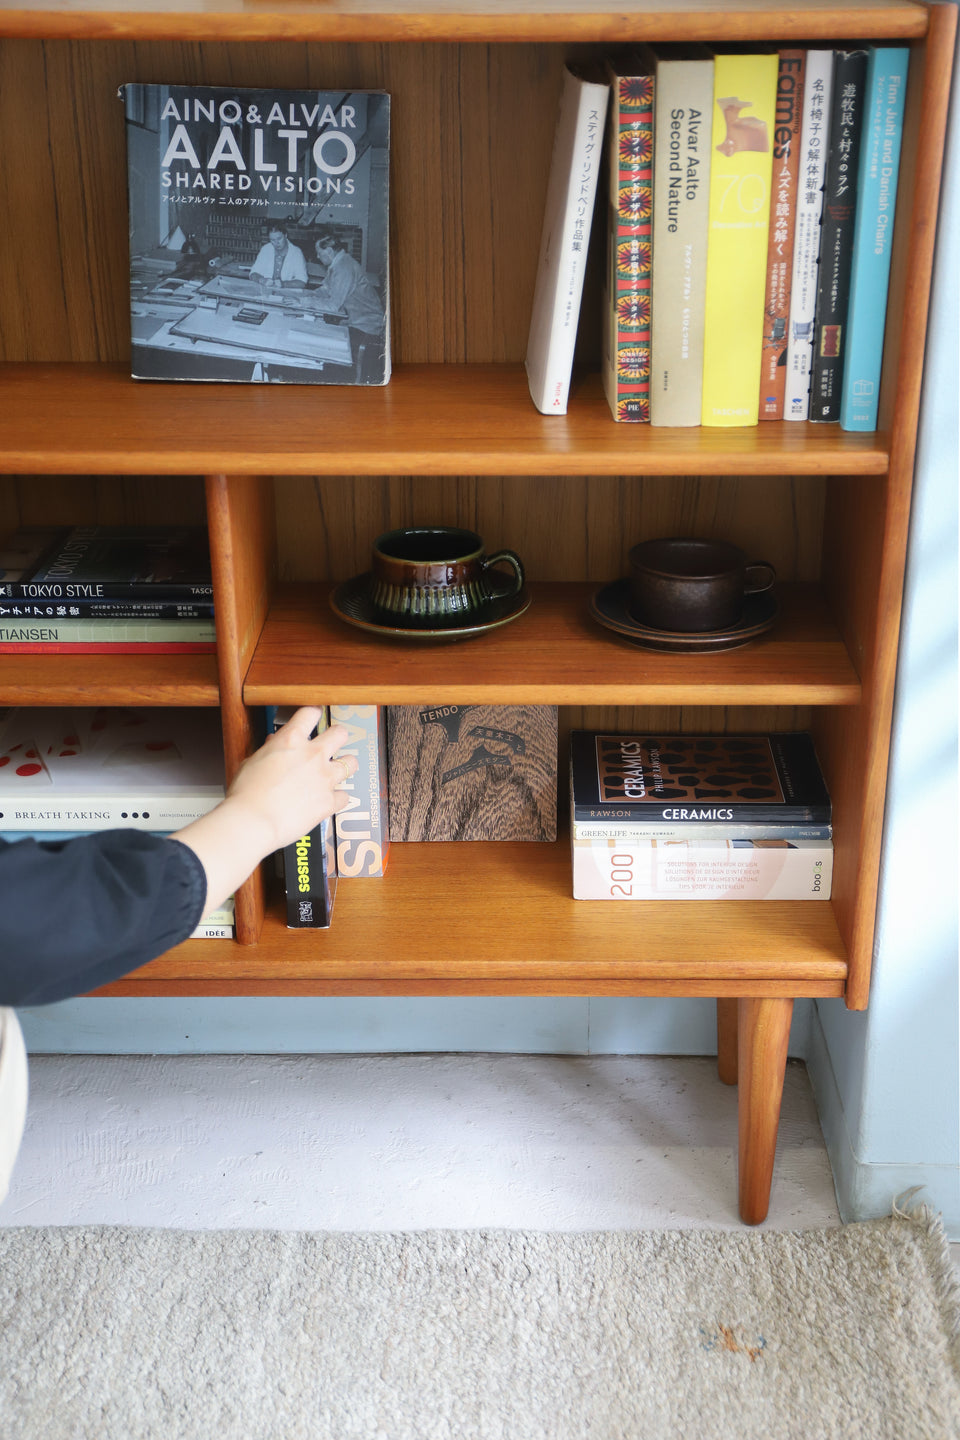 Teakwood Bookcase Shelf Danish Vintage/デンマークヴィンテージ ブックケース シェルフ 本棚 チーク材 収納 北欧家具